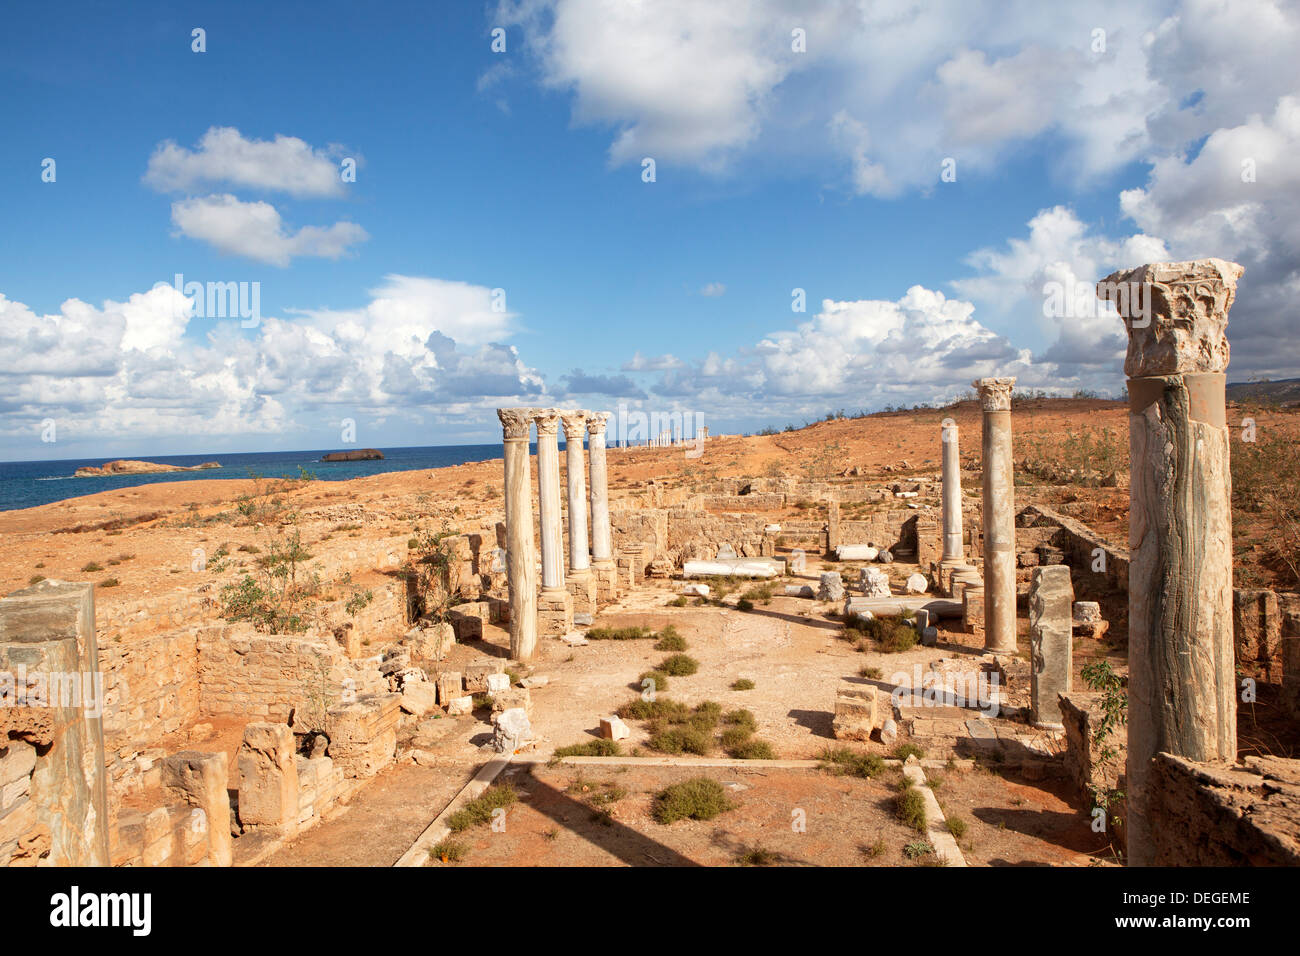 Cyrénaïque Apollonia, l'un des cinq villages de la Pentapole de Libye, le port de Cyrène, en Libye, en Afrique du Nord, Afrique Banque D'Images